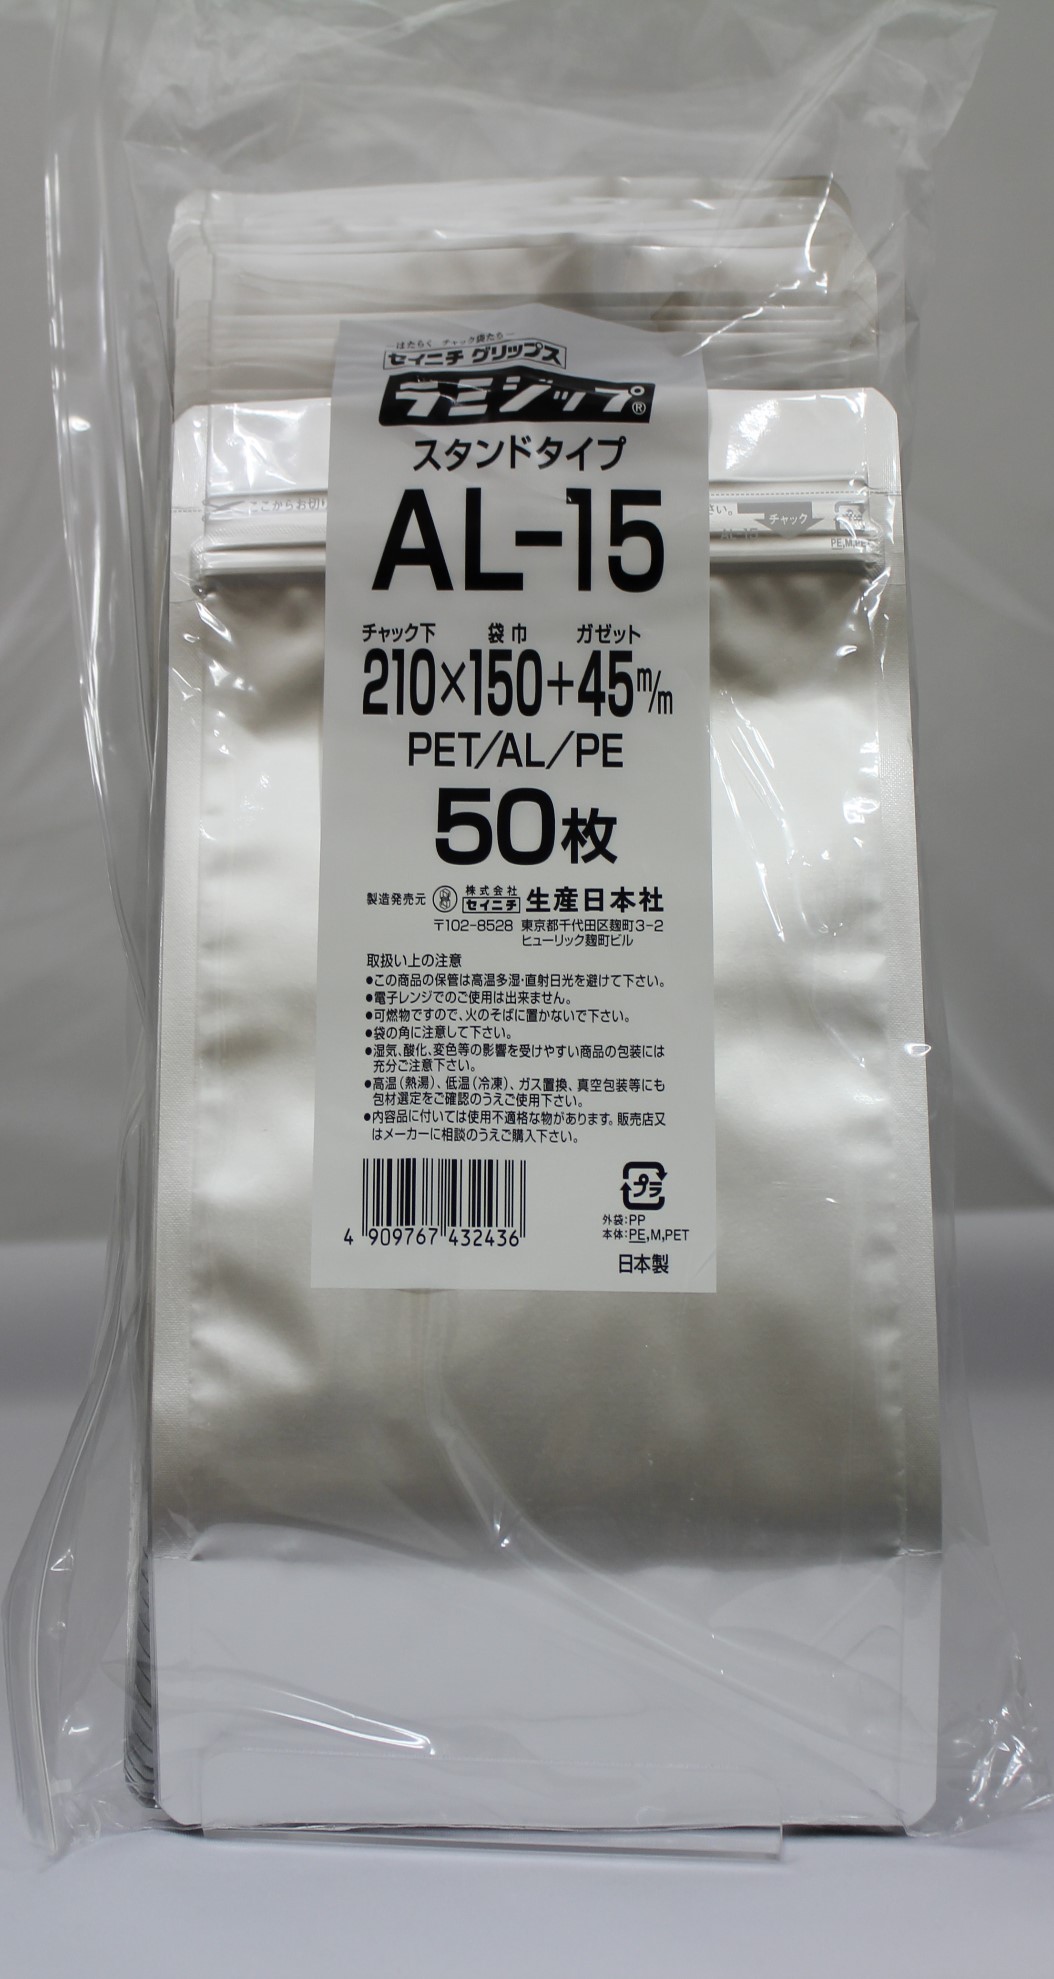 人気アイテム アルミ袋 ラミジップ AL-16 50枚袋入 スタンドパック 自立袋 チャック付 ガスバリア 防湿 遮光 保存 